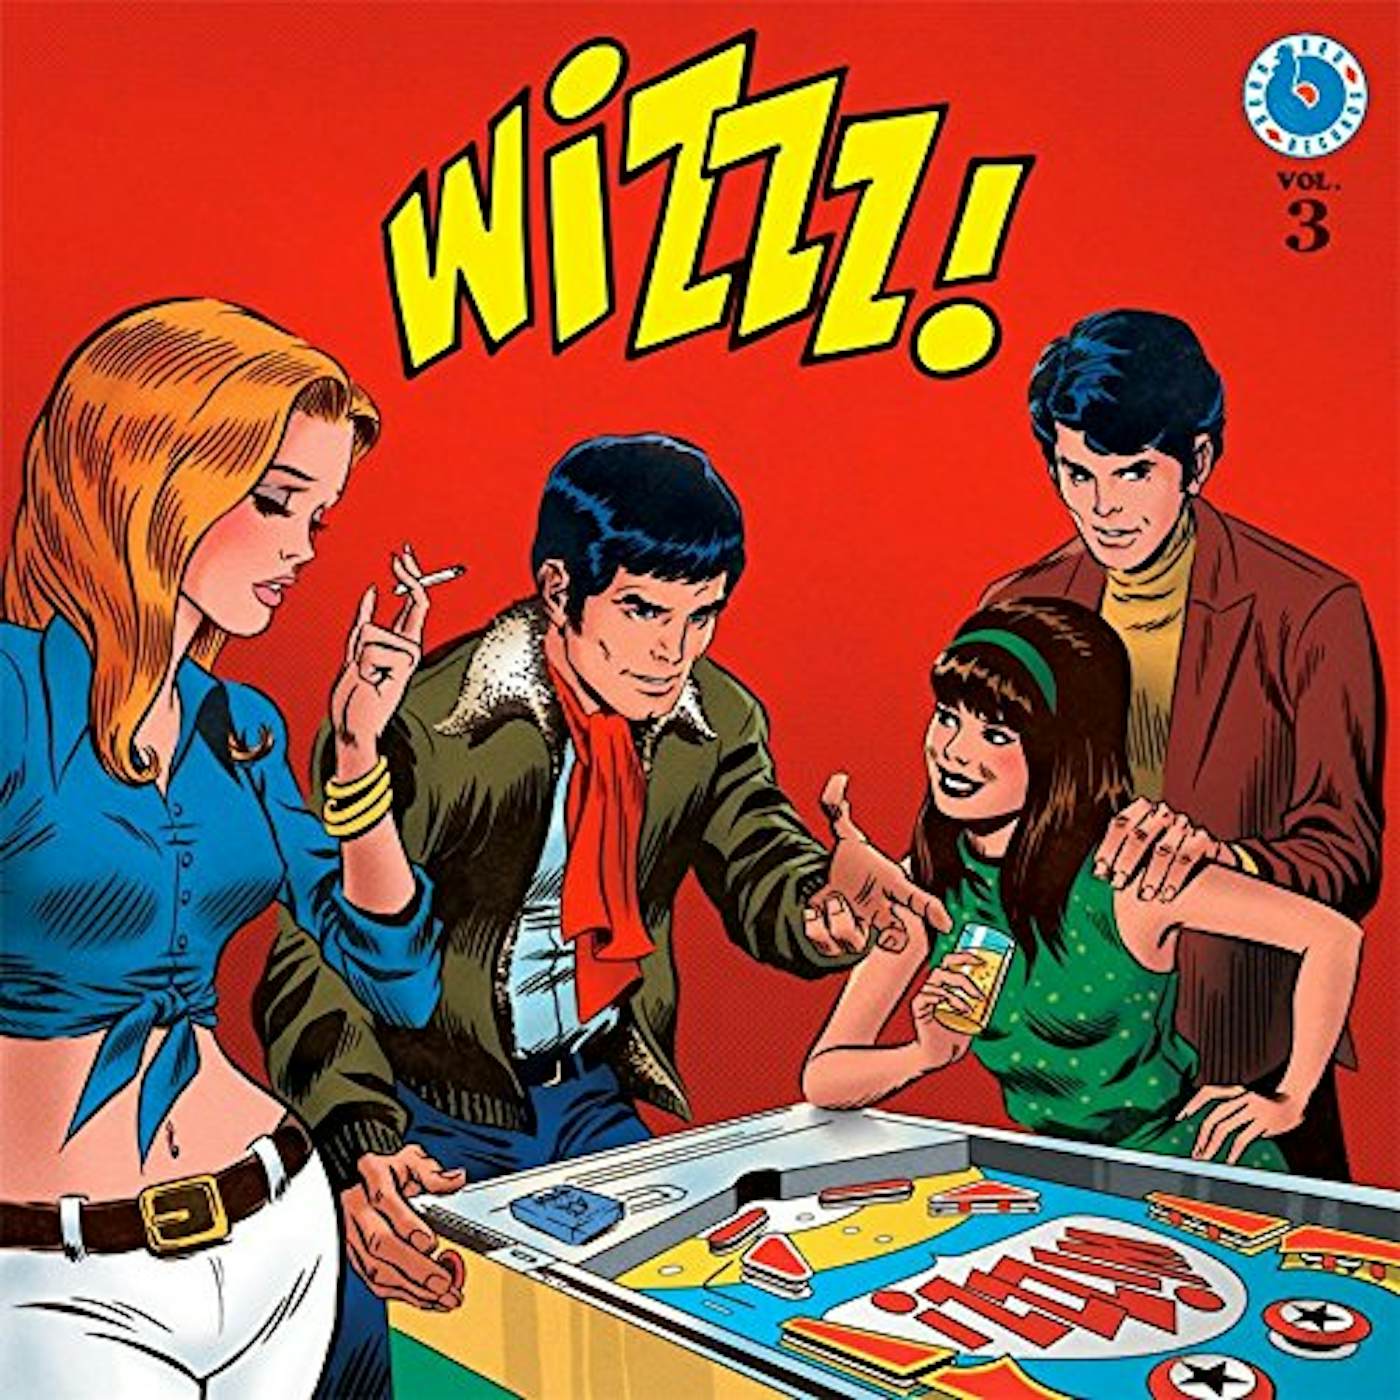 WIZZZ FRENCH PSYCHORAMA 1967-1970 VOLUME 3 / VAR Vinyl Record